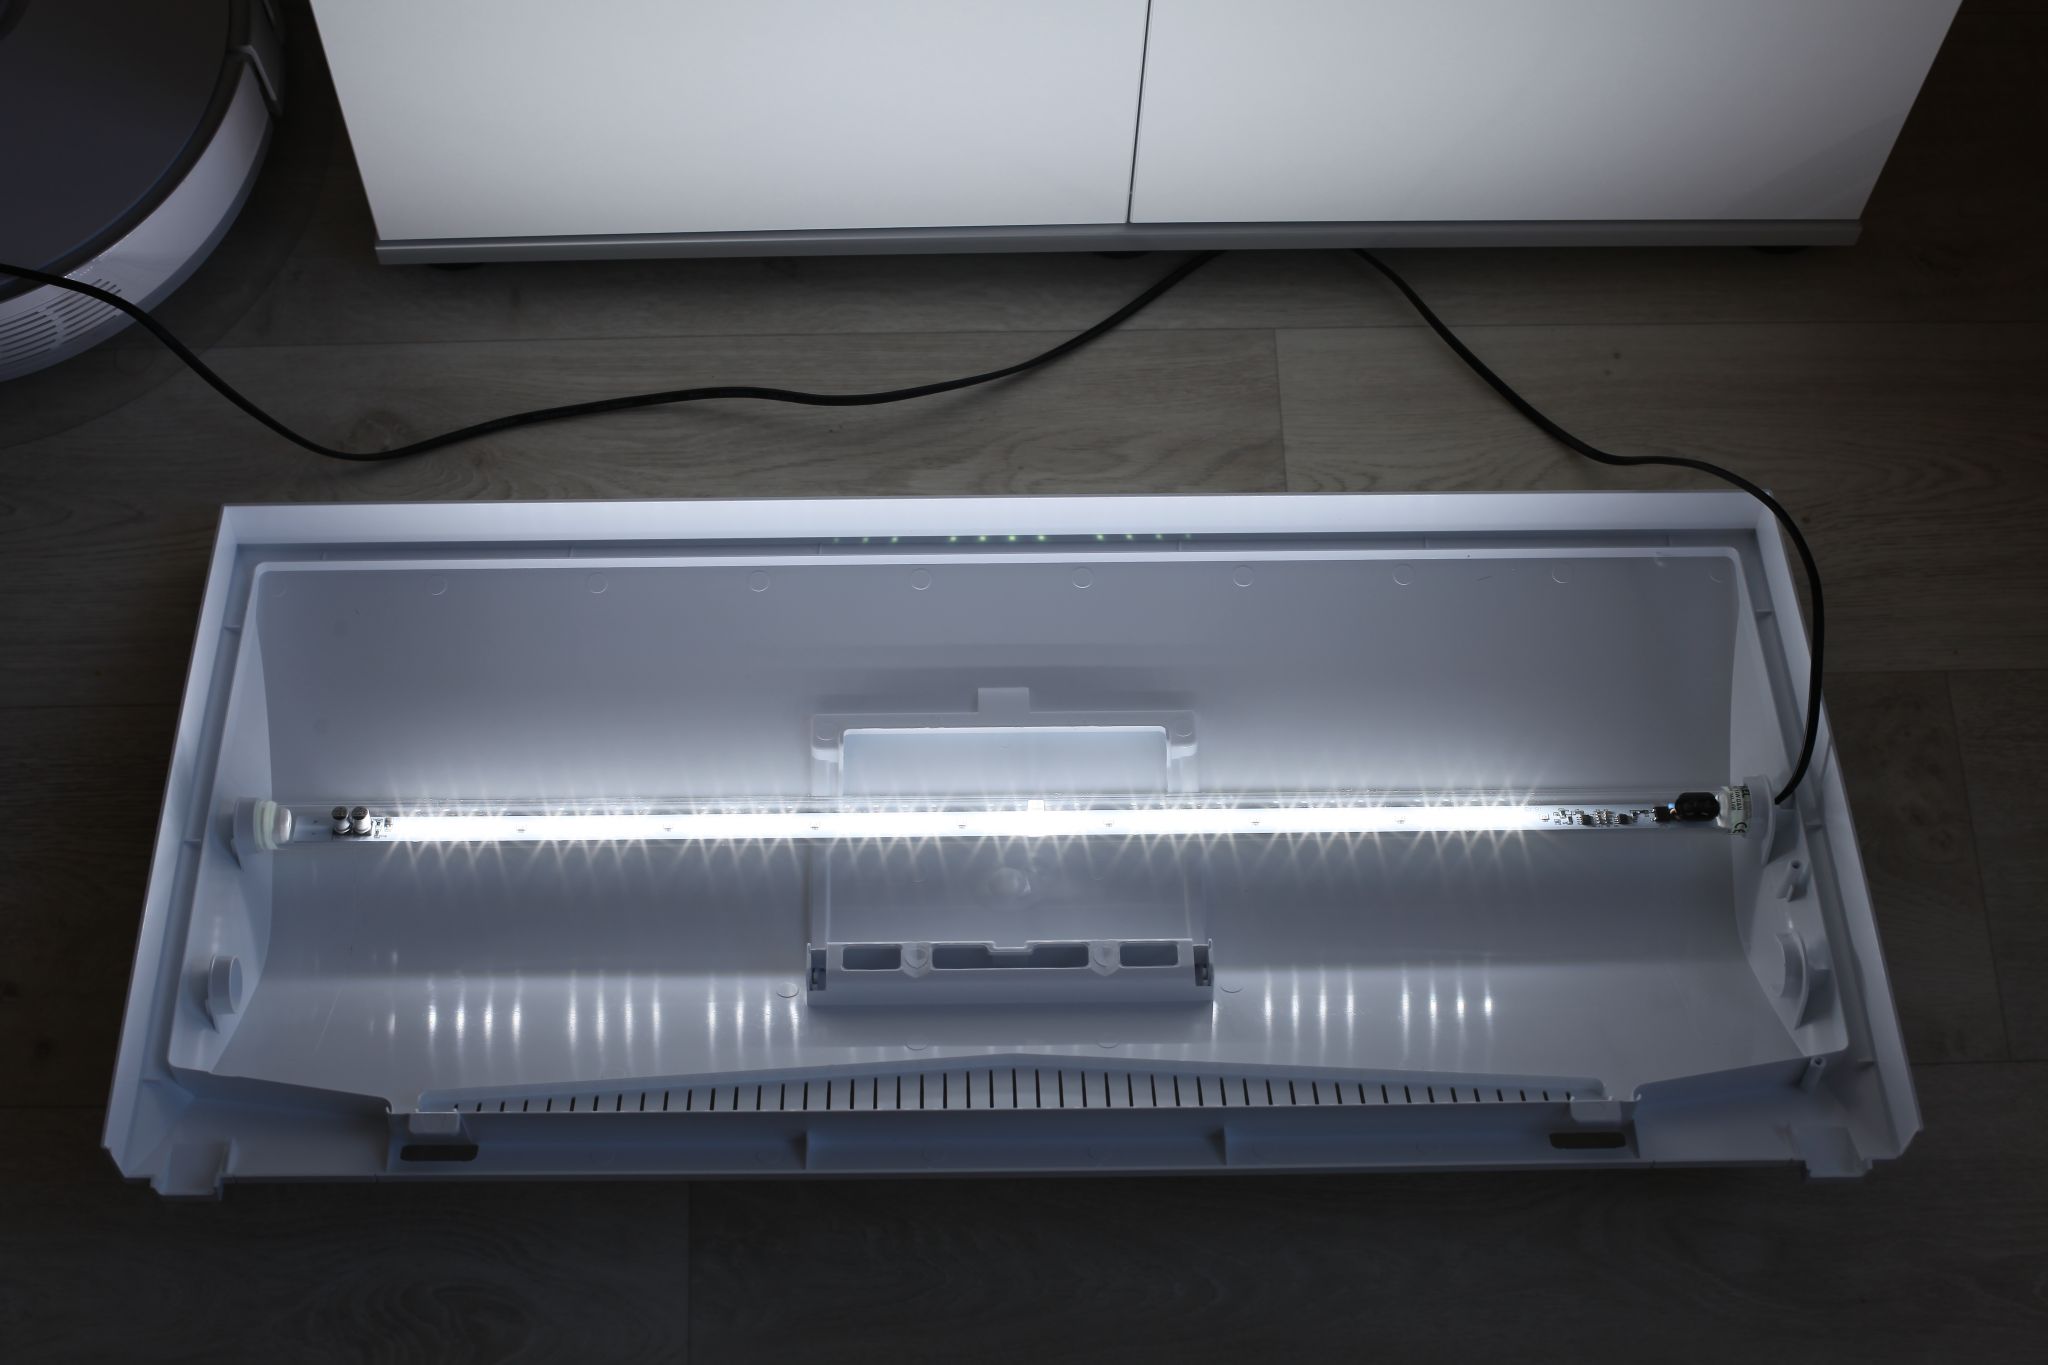 Аквариум AQUAEL LEDDY SET PLUS 75 D&N 2.0 со светодиодным освещением, фильтром и нагревателем, (75x35x40см) 105 литров, белый - Изображение 5